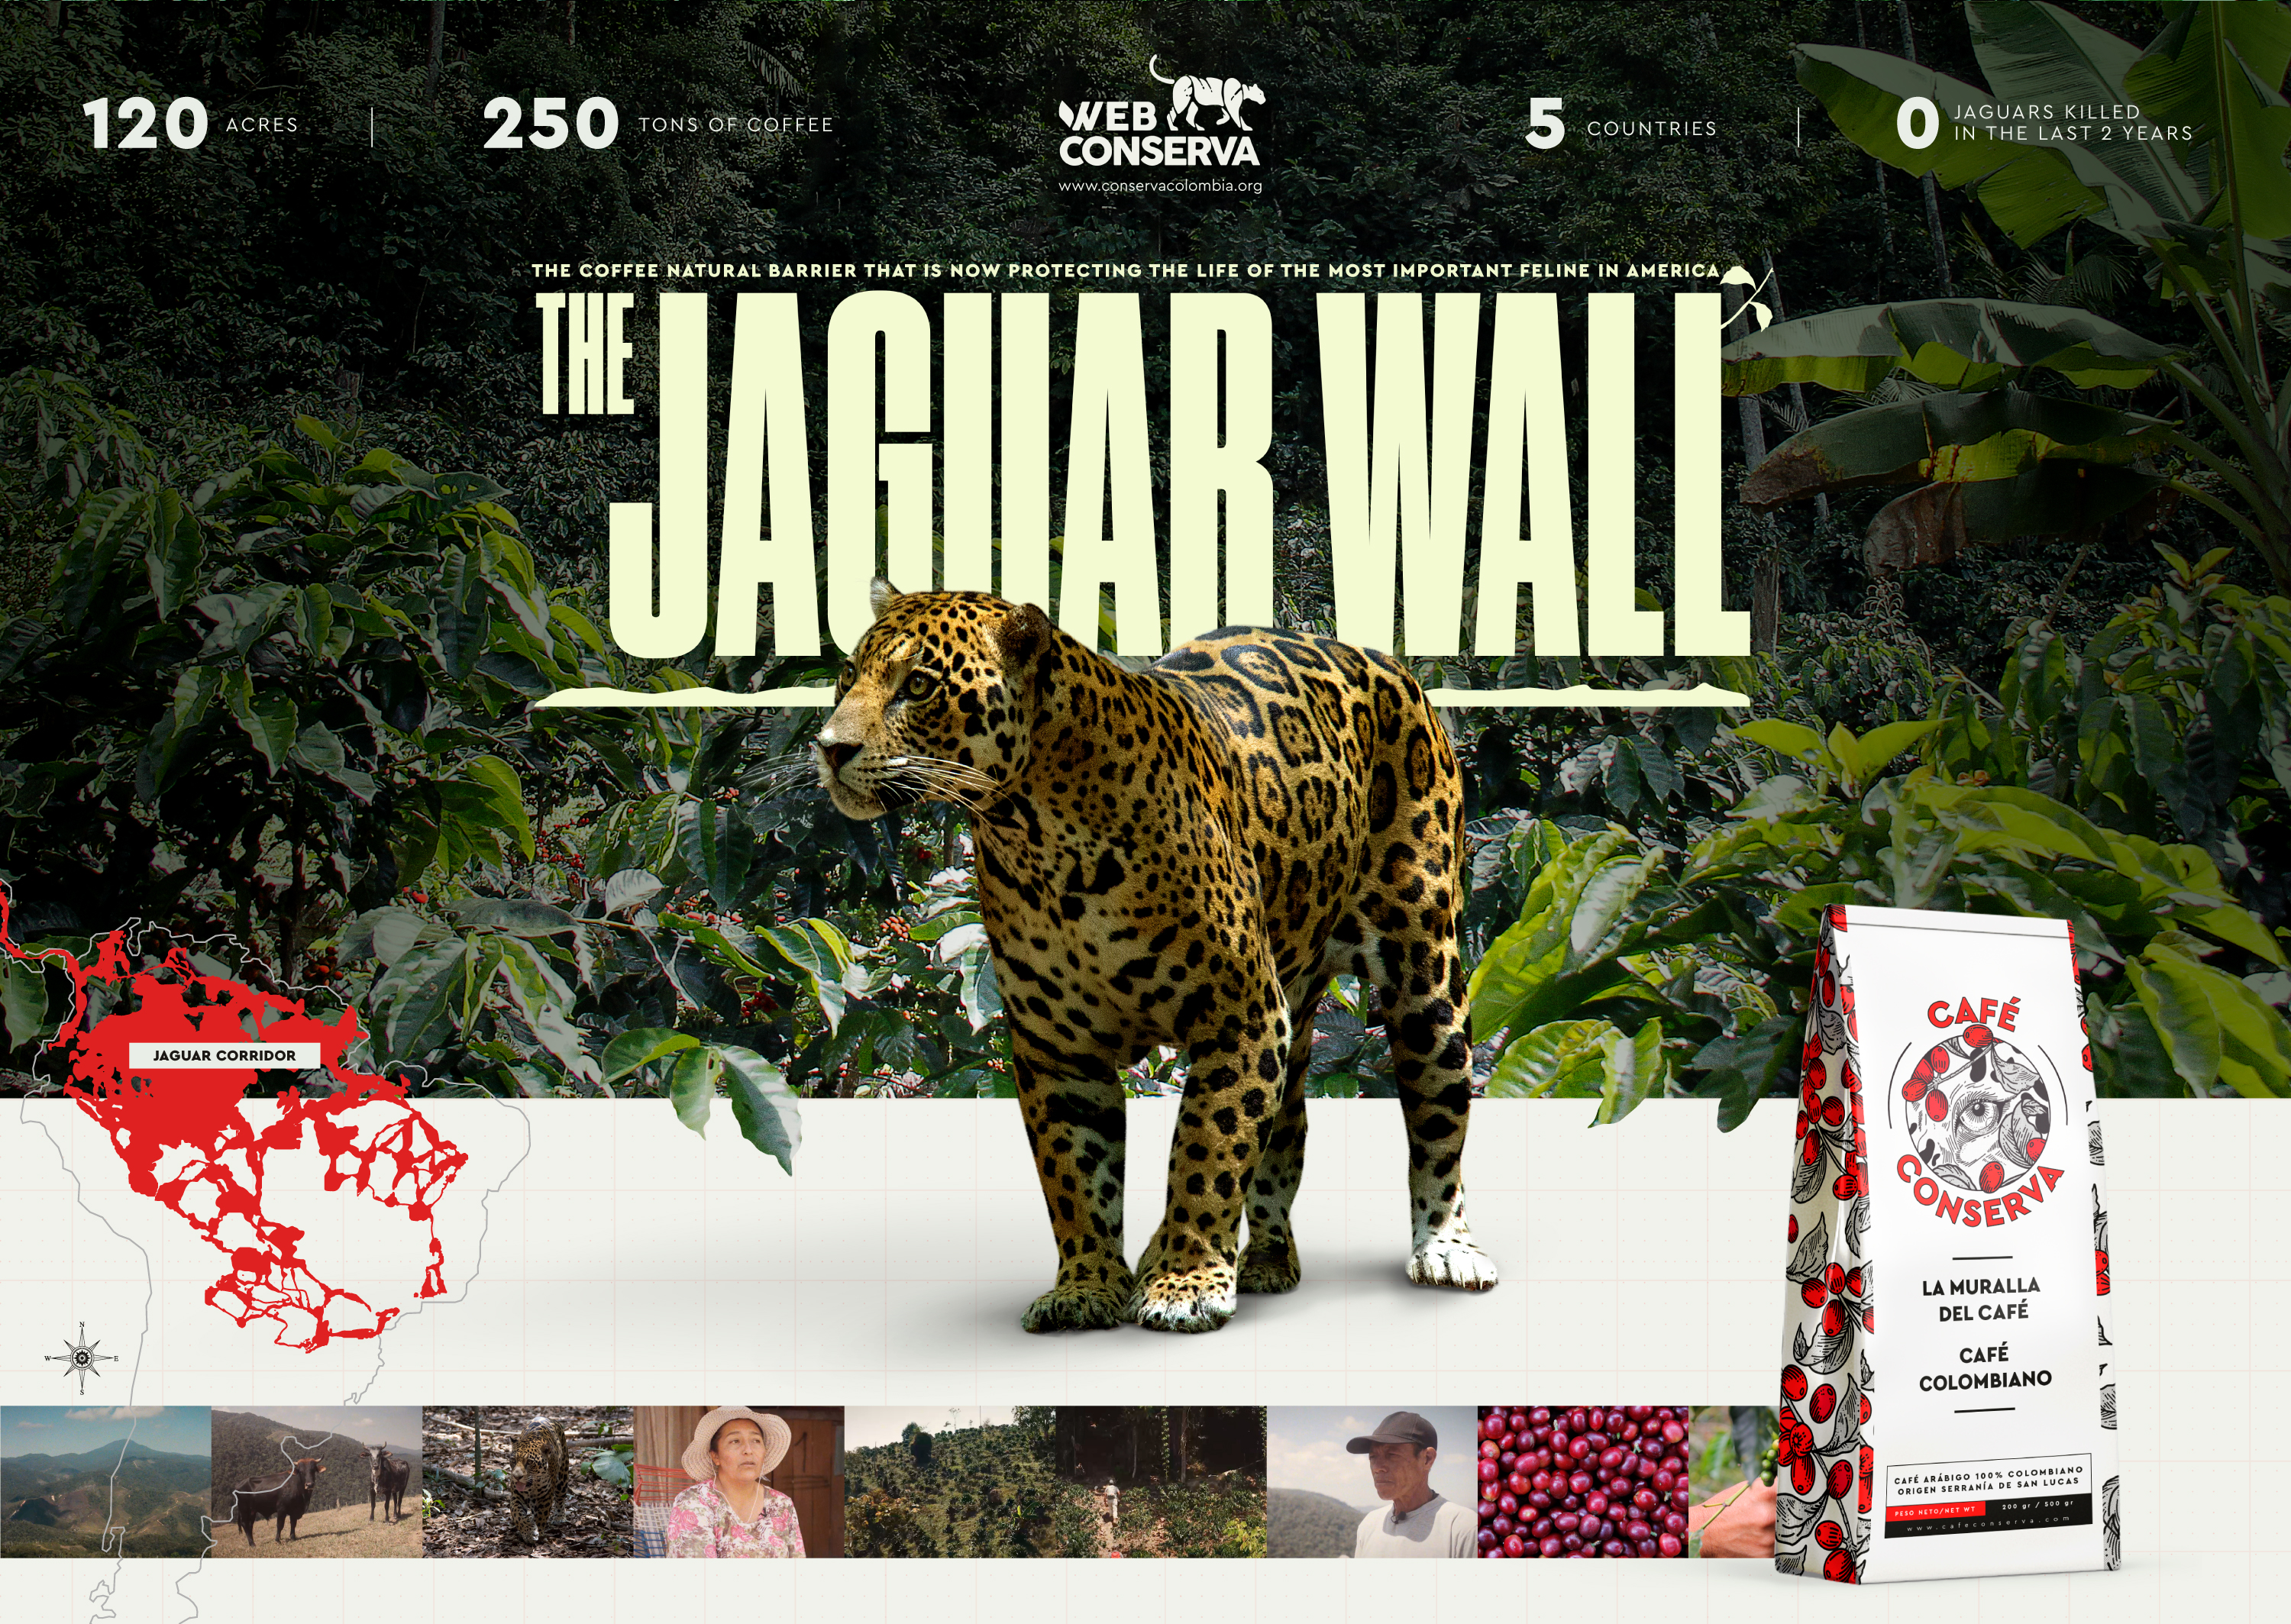 La Muralla del jaguar